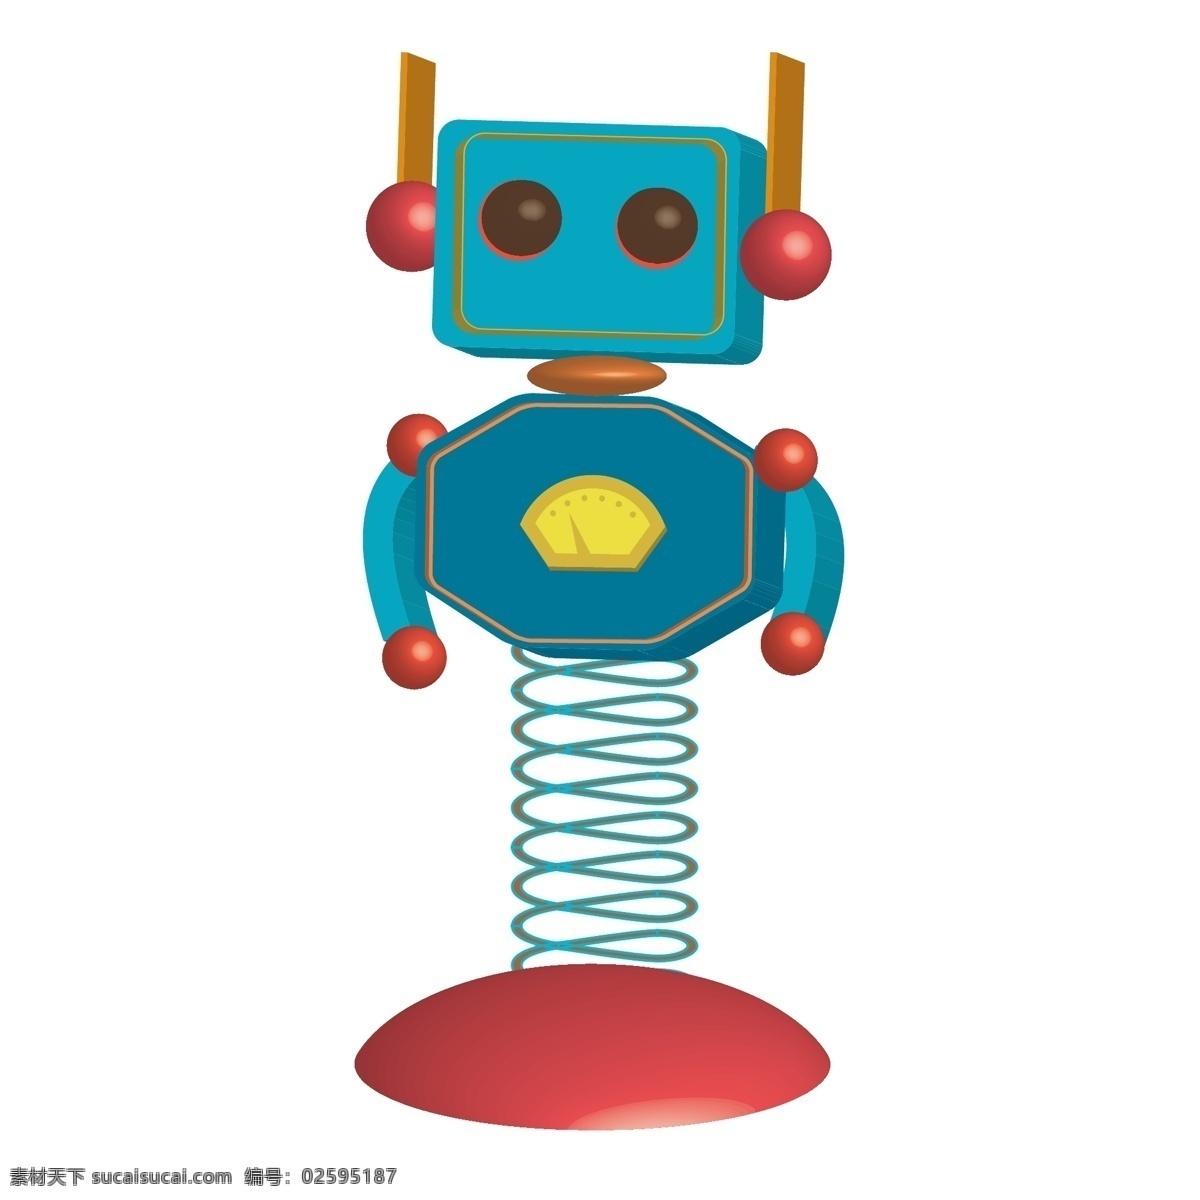 弹簧 机器人 弹簧机器人 不倒翁 模型 印刷 卡通 矢量图 3d 动漫动画